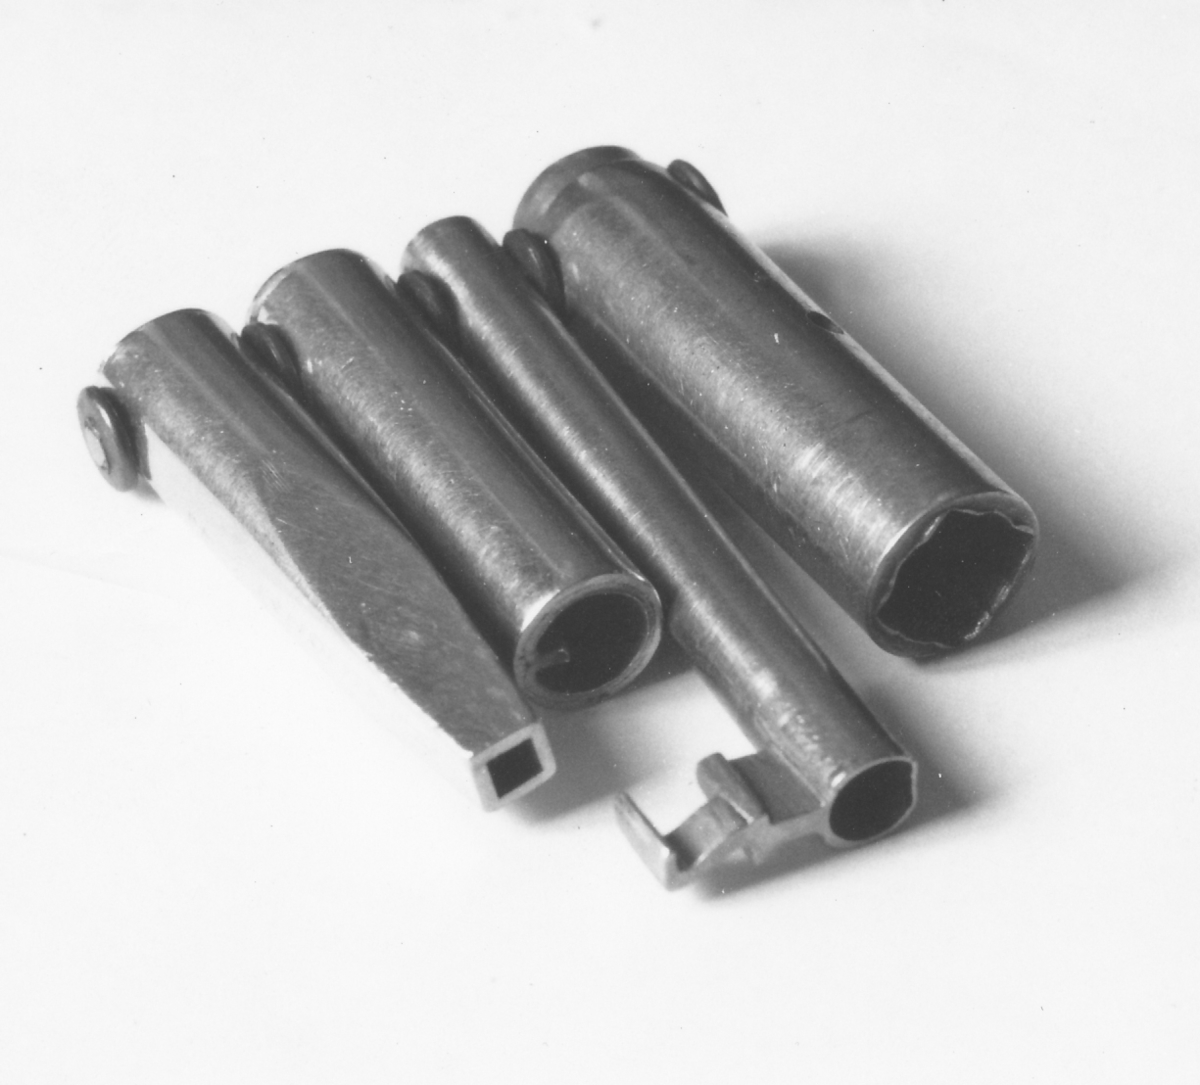 Nycklar, fyra stycken tillverkade av poststationsmästaren Olle Rhodiner i Kil. Nycklarna användes i tjänsten för bruk inne i postkupén och för att öppna postkupéerna.